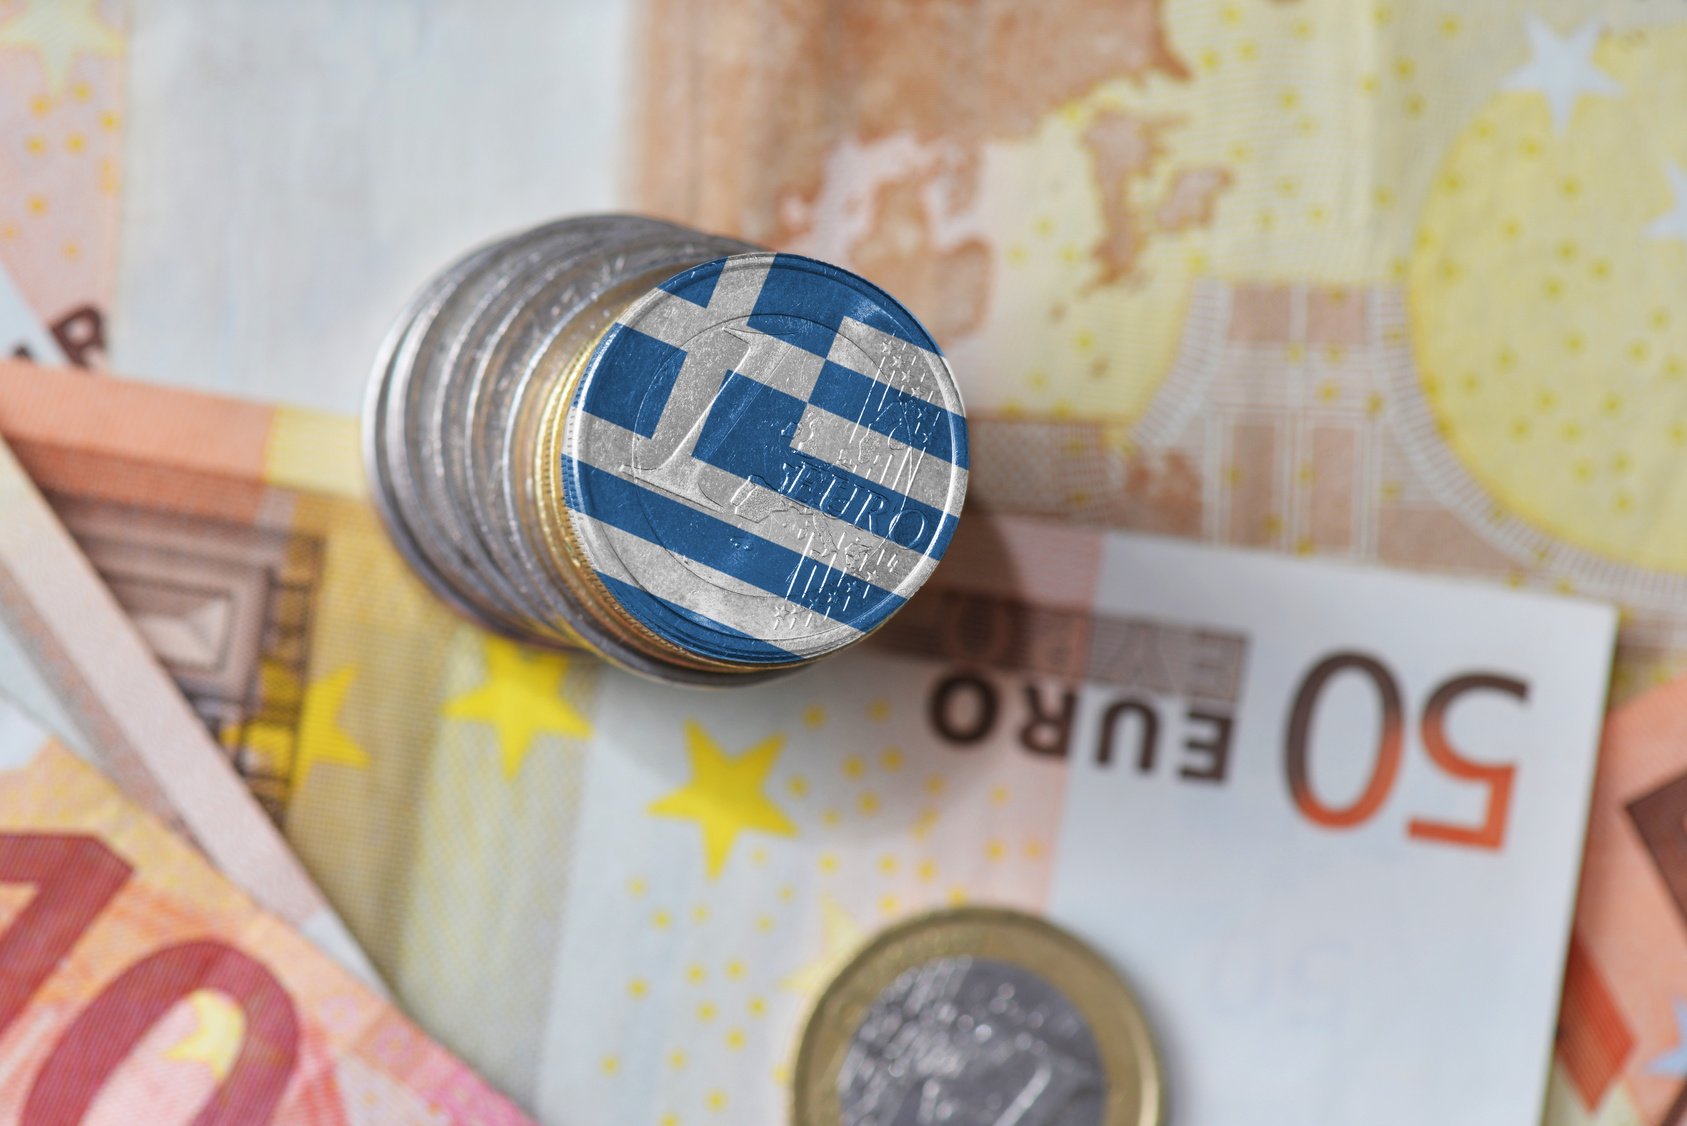 Παπαθανάσης: Έτοιμη η Ελλάδα να υποβάλει το 4ο αίτημα εκταμίευσης πόρων από το Τ.Α.